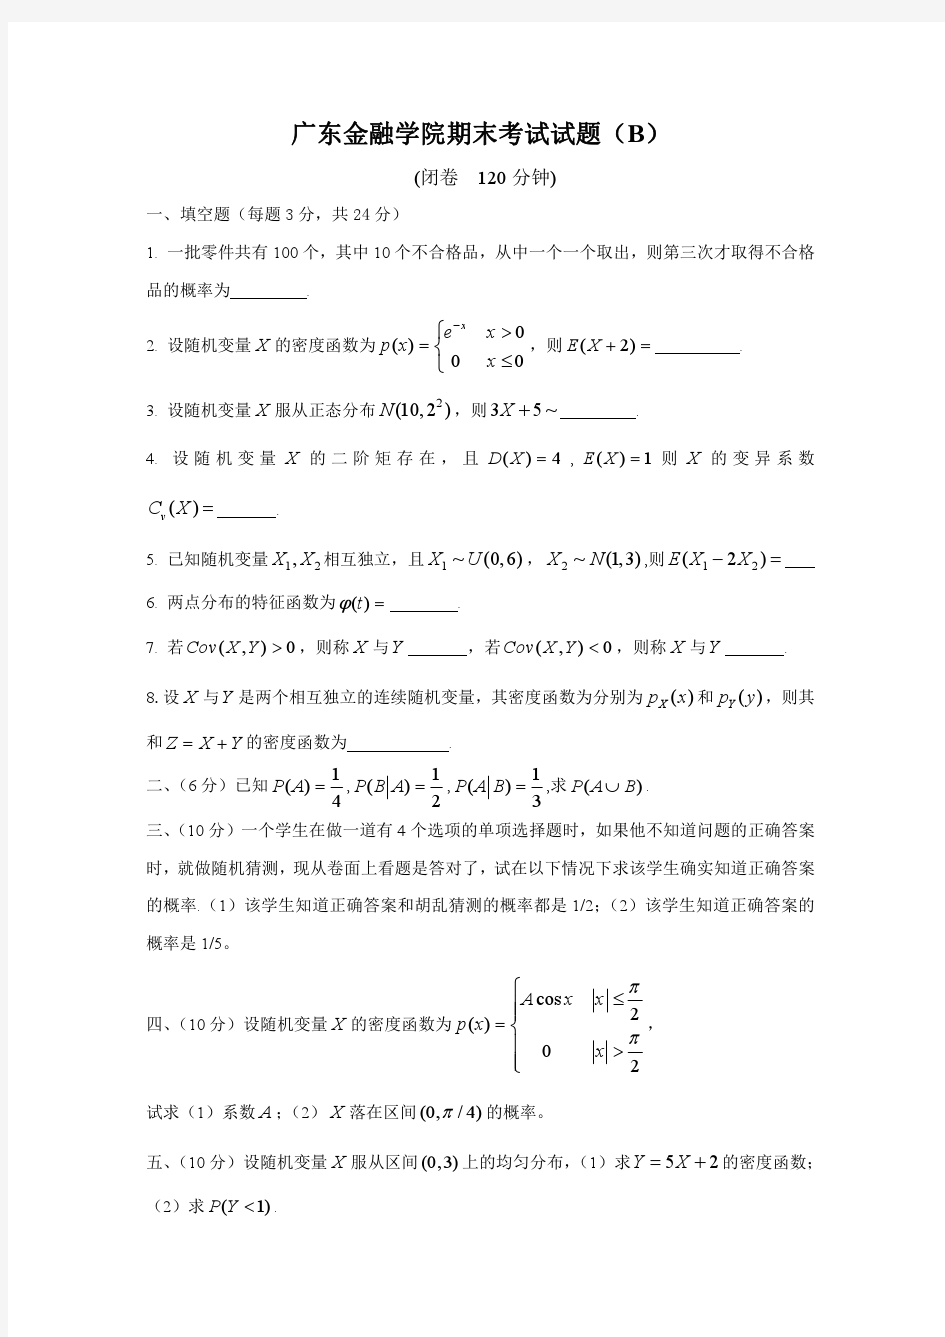 广东金融学院期末考试试题(B)概率论与数理统计